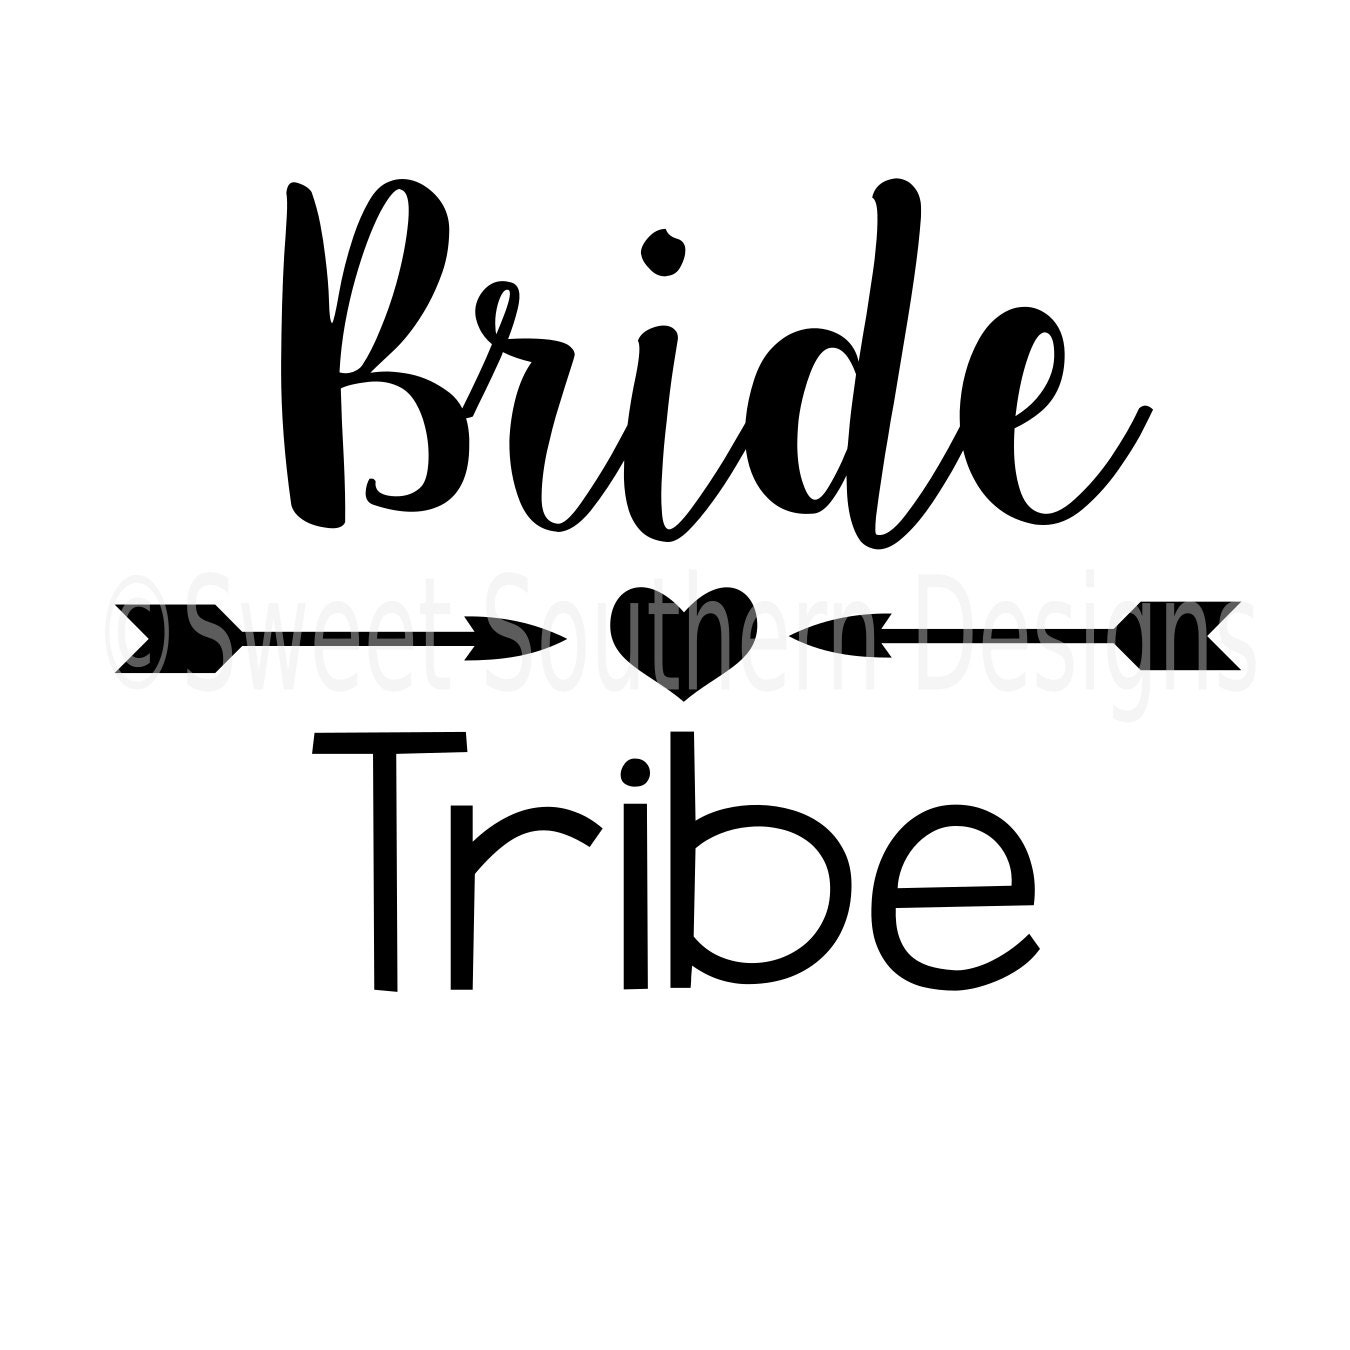 Download Bride tribe wedding SVG instant download design for cricut or